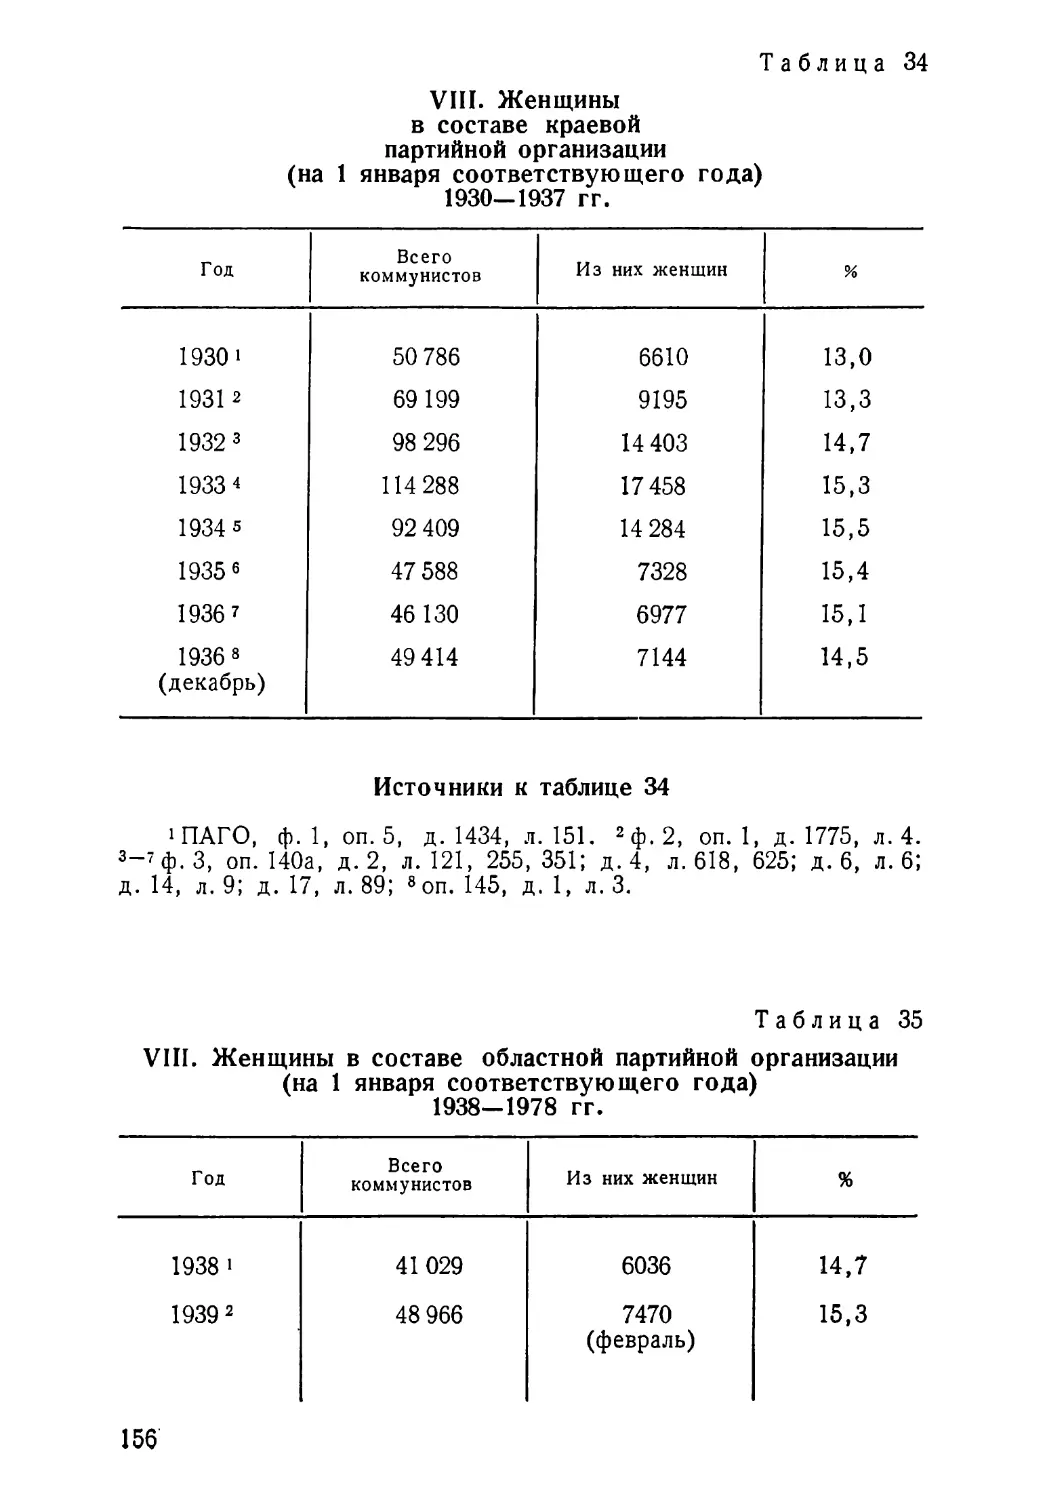 1930—1937 гг. Таблица 34
1938—1978 гг. Таблица 35